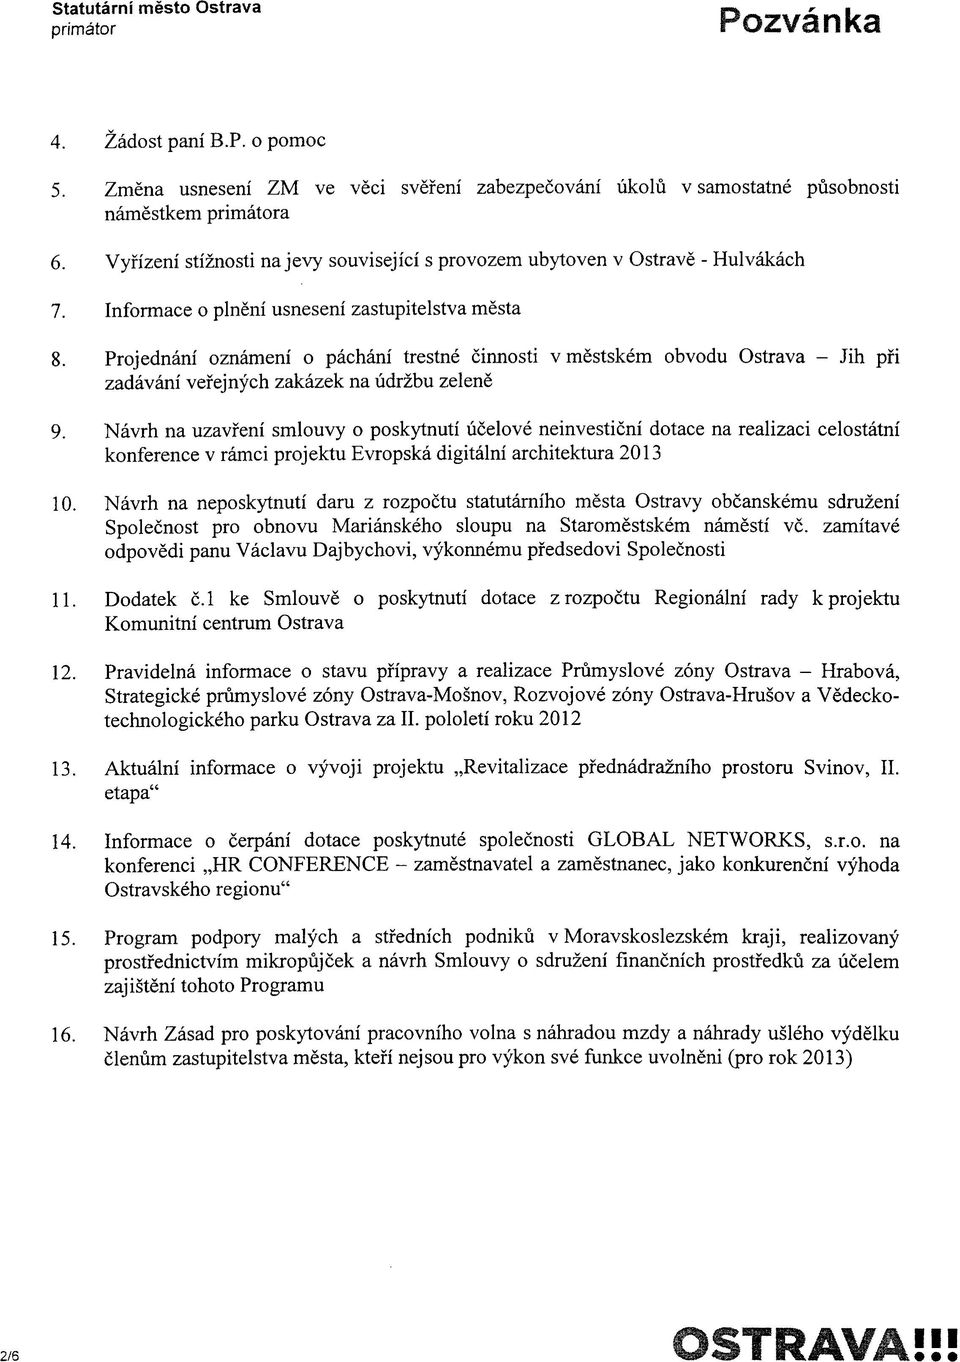 Projednani oznameni o pachani trestne cinnosti v mestskem obvodu Ostrava - Jih pfi zadavani vefejnych zakazek na udrzbu zelene 9.